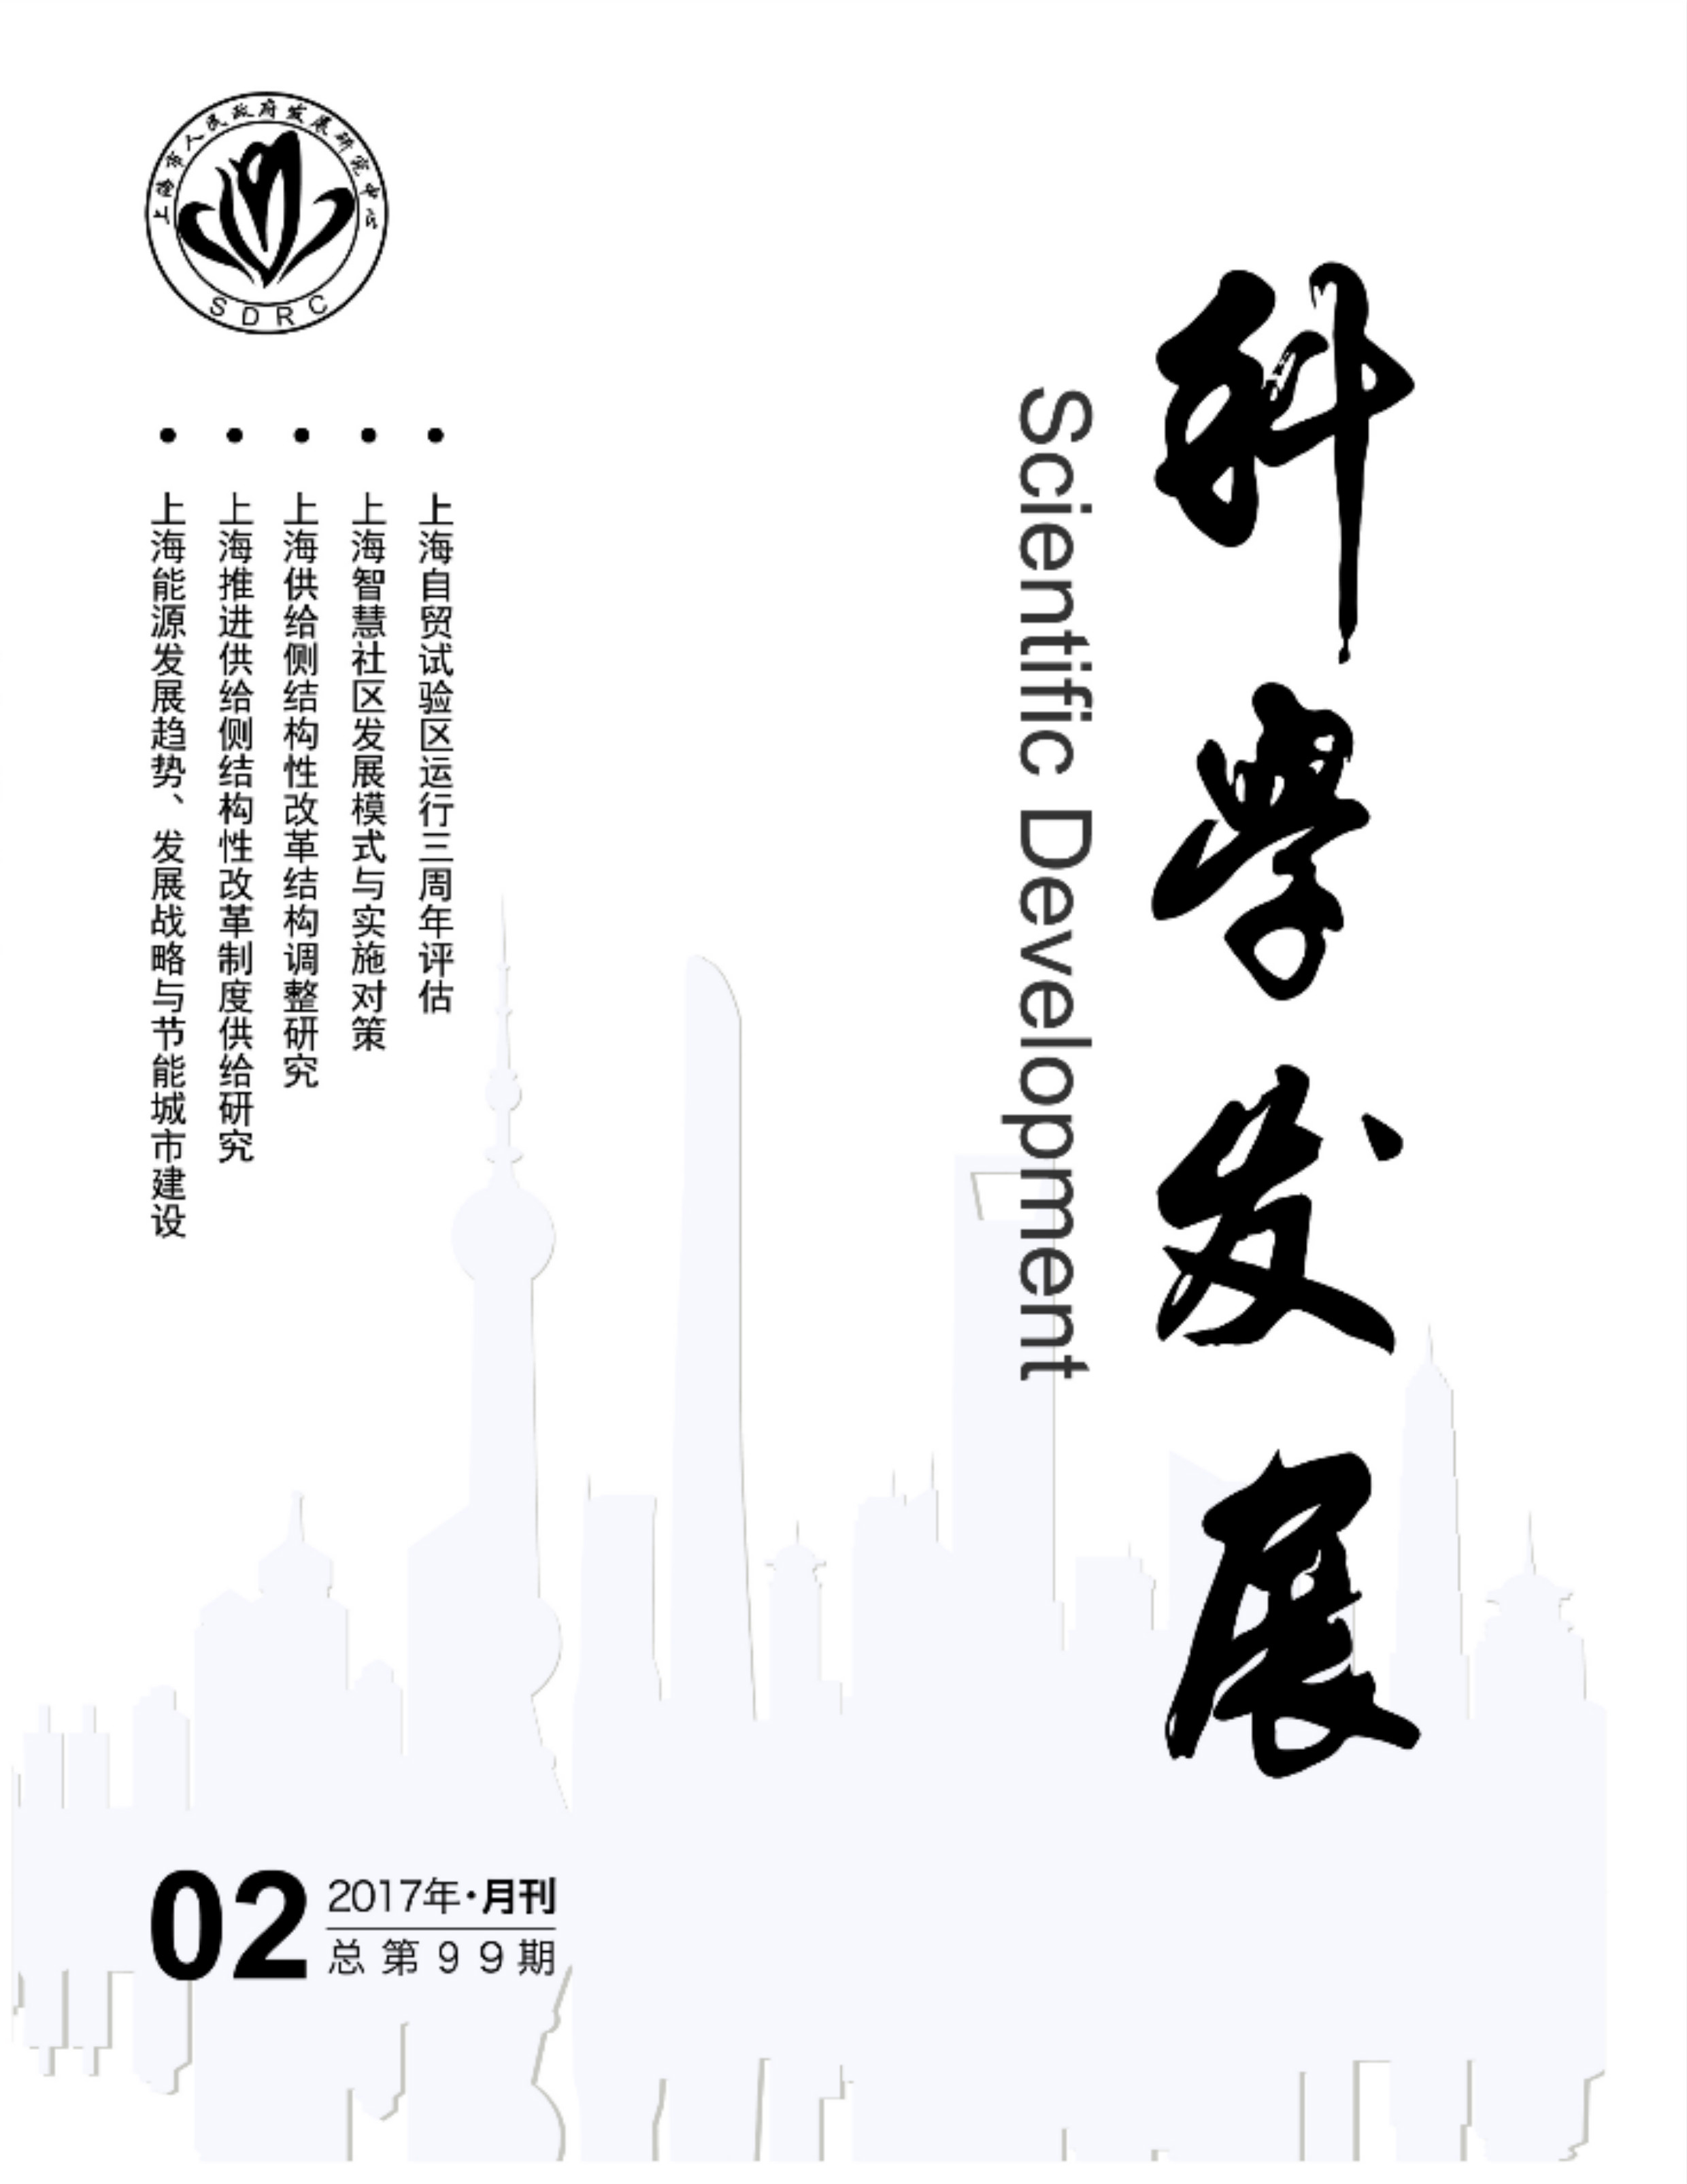 科學發展(上海市政府發展研究中心主辦雜誌)